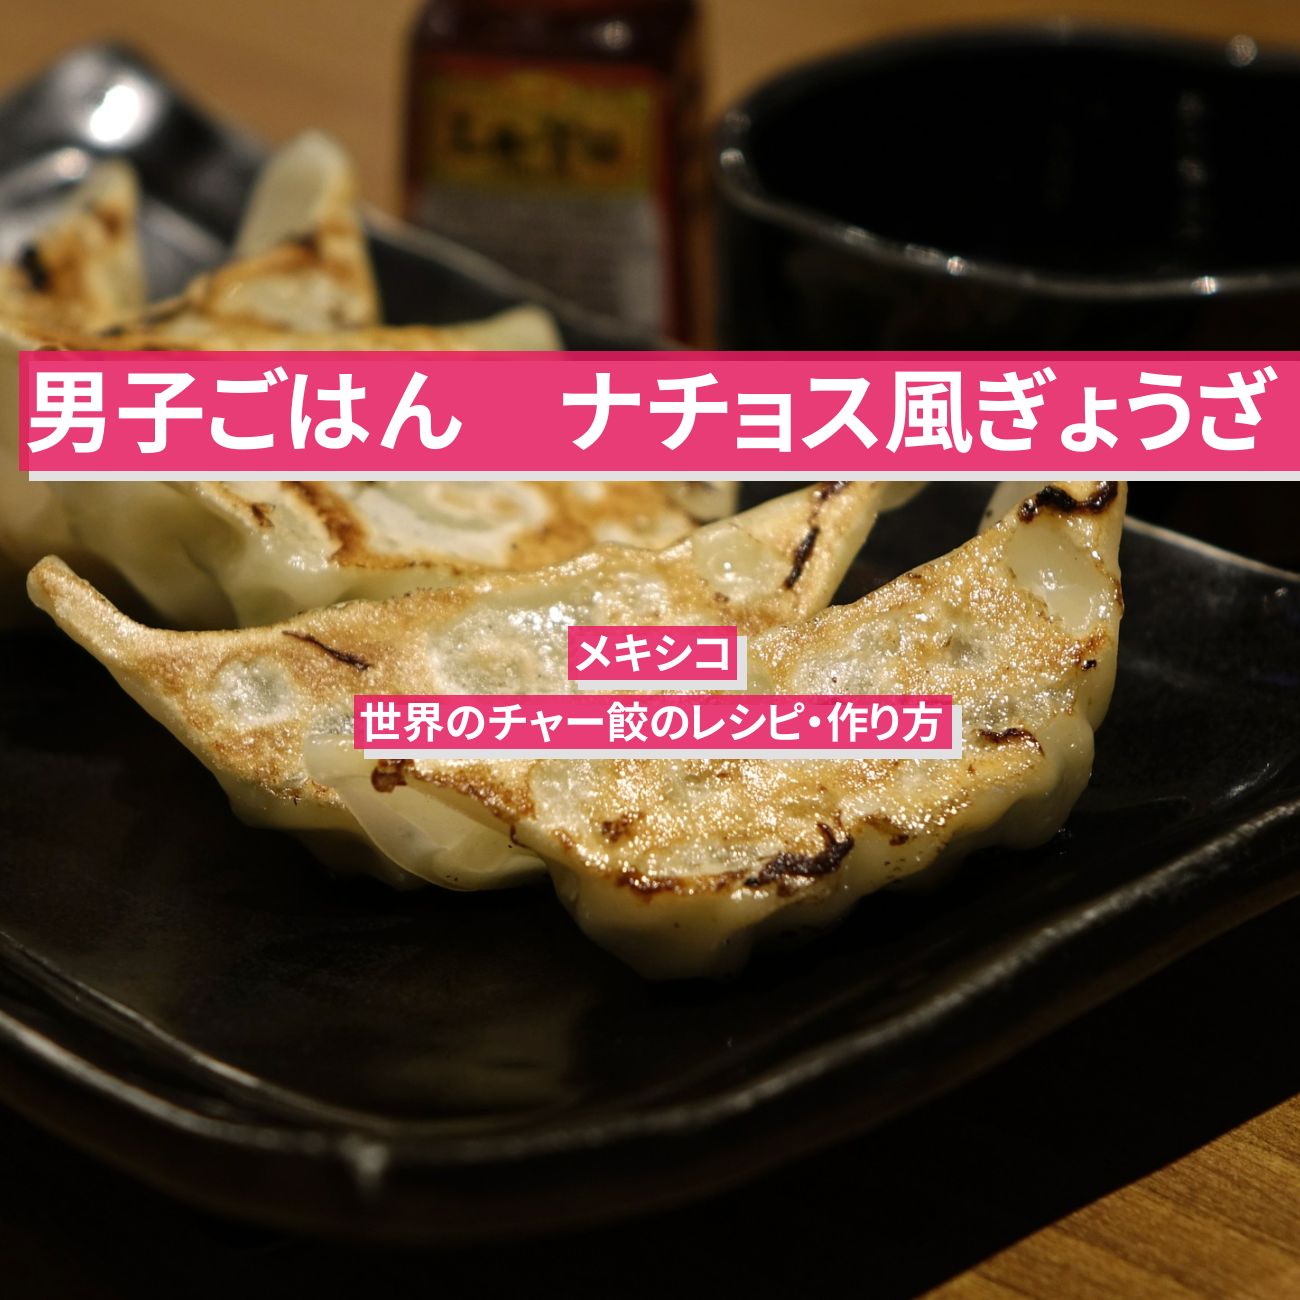 【男子ごはん】『ナチョス風餃子』 世界のチャー餃のレシピ・作り方